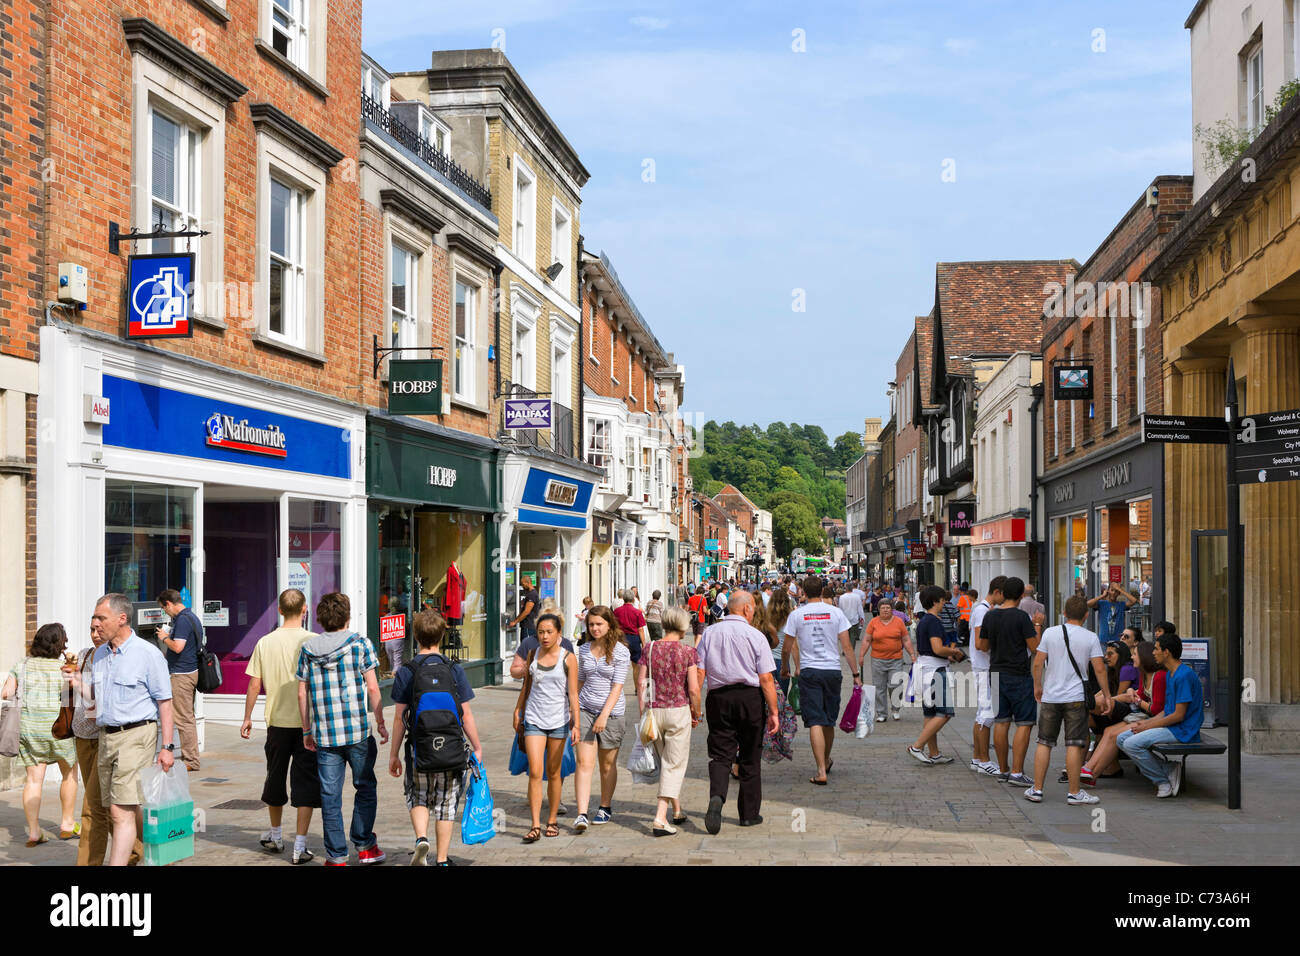 Tiendas de High Street en el centro de la ciudad, Winchester, Hampshire, Inglaterra, Reino Unido. Foto de stock